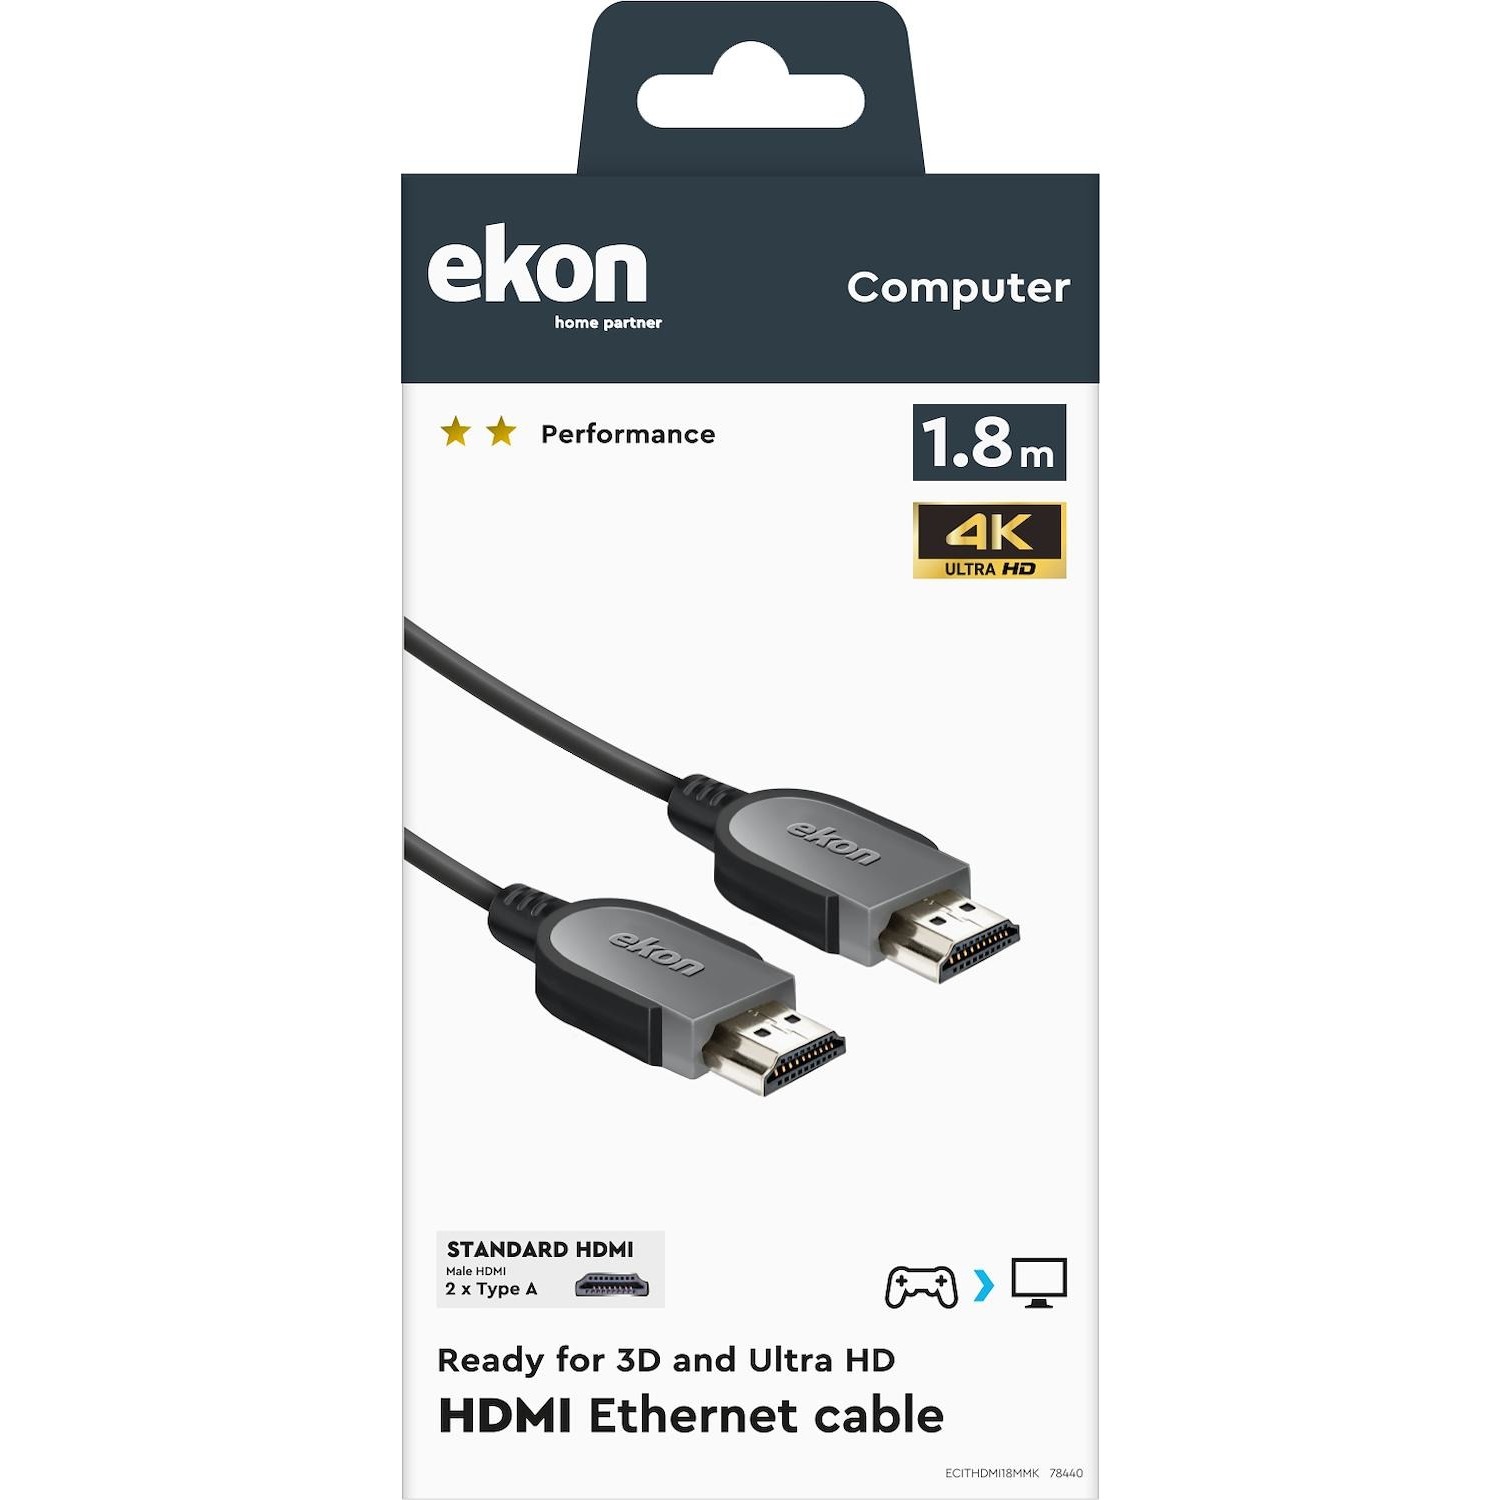 Immagine per Cavo Ekon ad alta velocità HDMI tipo A maschio concavo Ethernet maschio per 3D e Ultra HD da DIMOStore